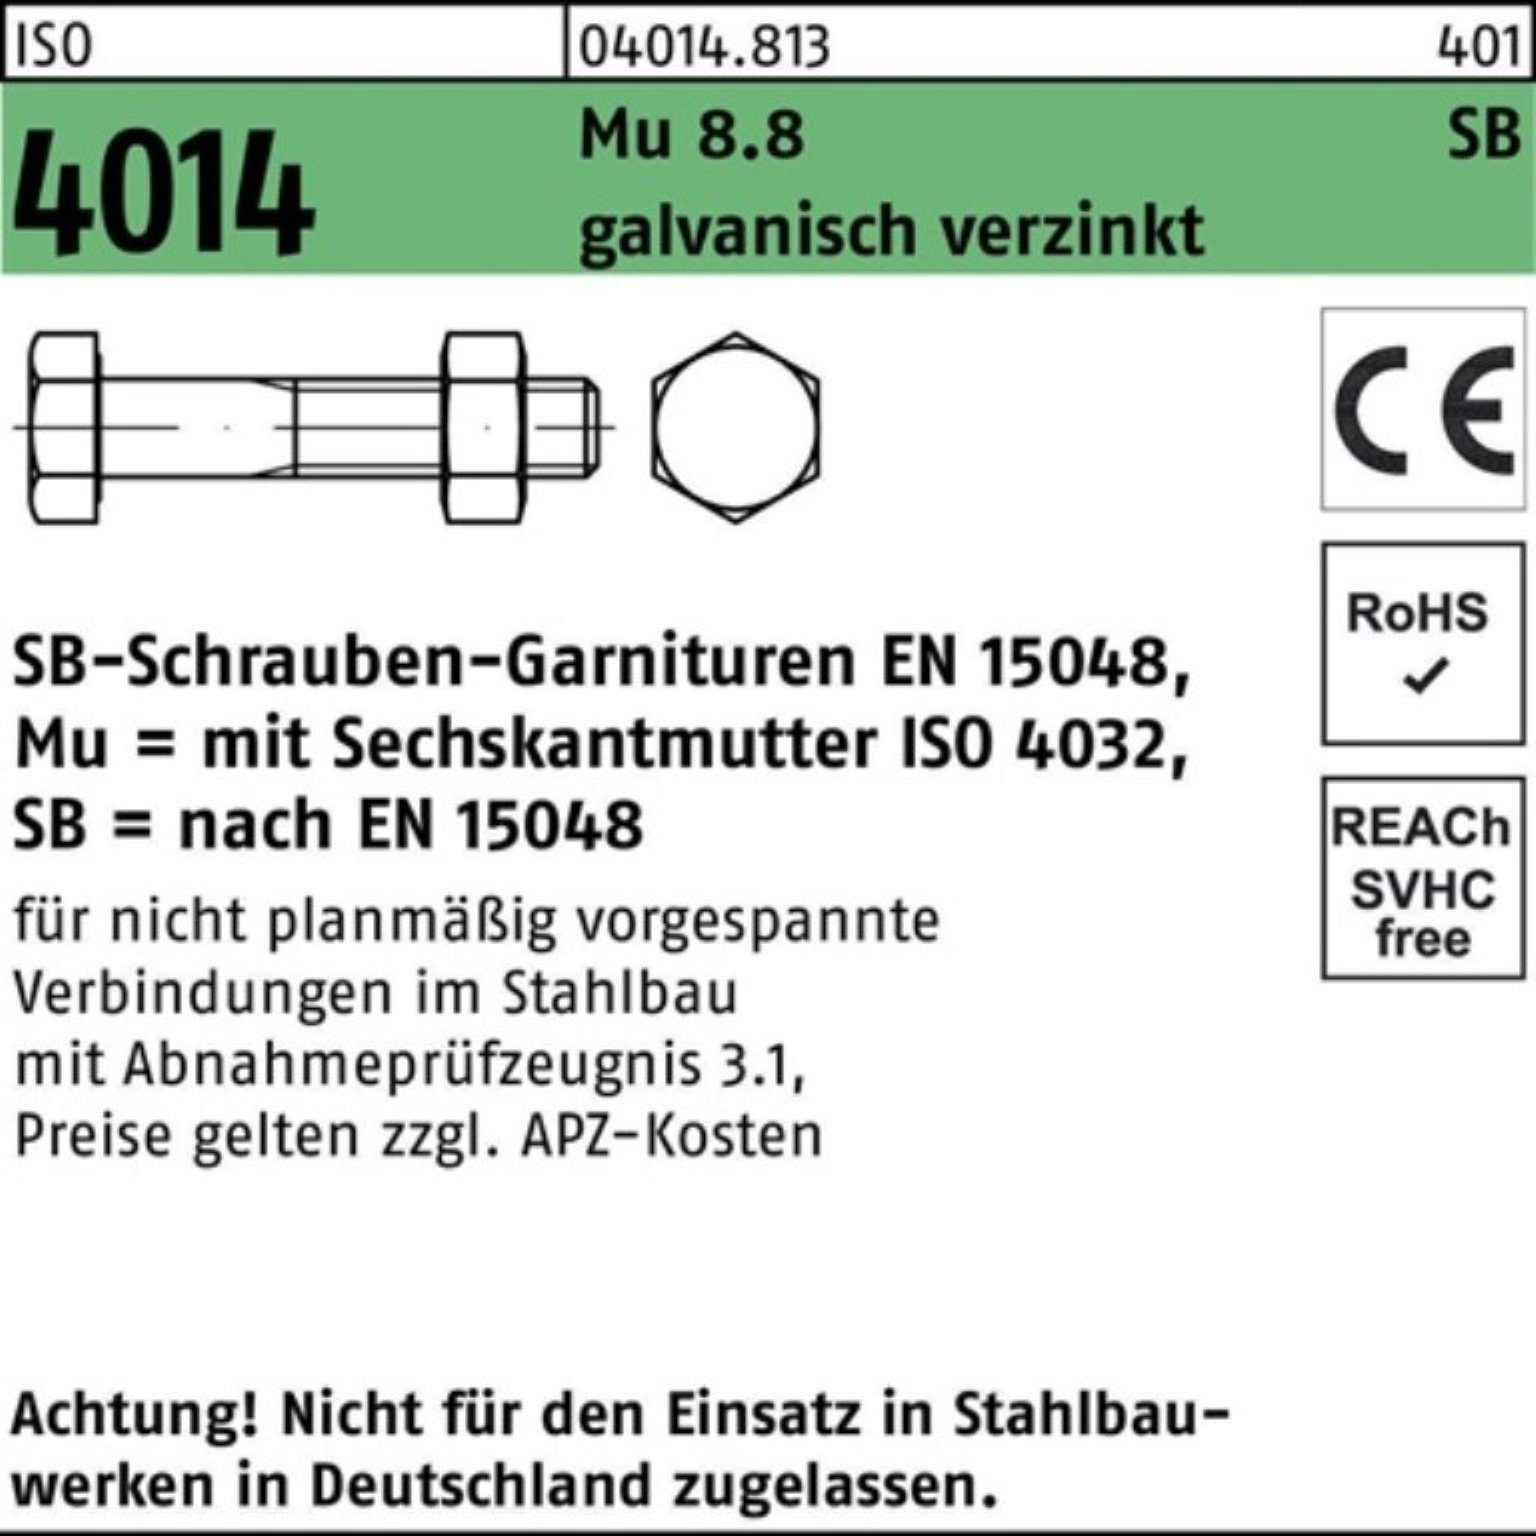 Schaft/Mutter Sechskantschraube Sechskantschraube ISO 4014 Bufab 8.8 Mu galv M10x80 100er Pack